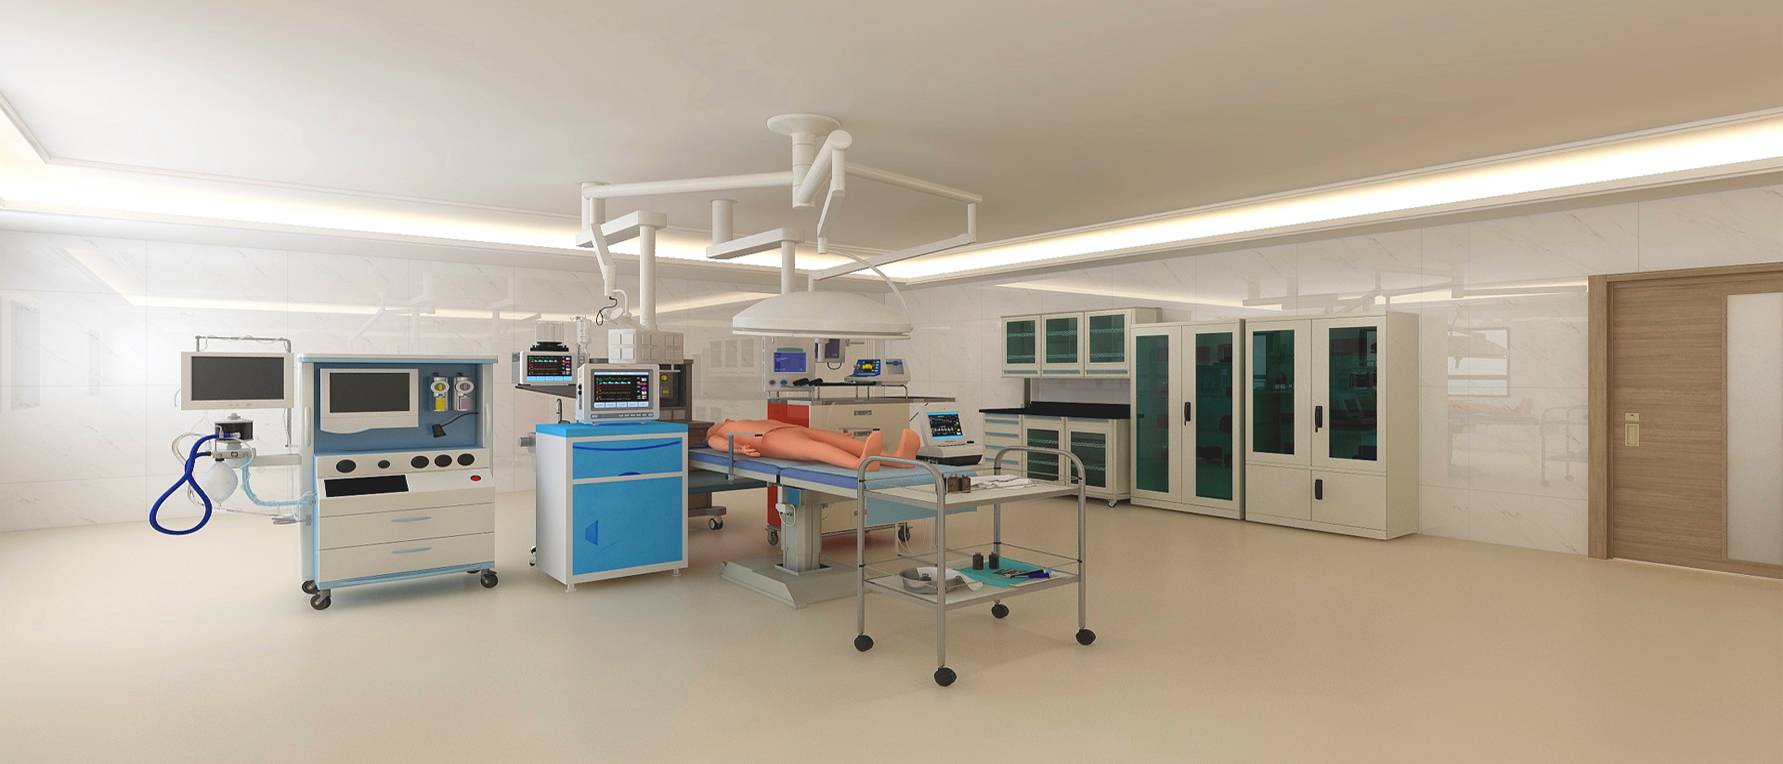 模拟手术室展示图 - 手术室